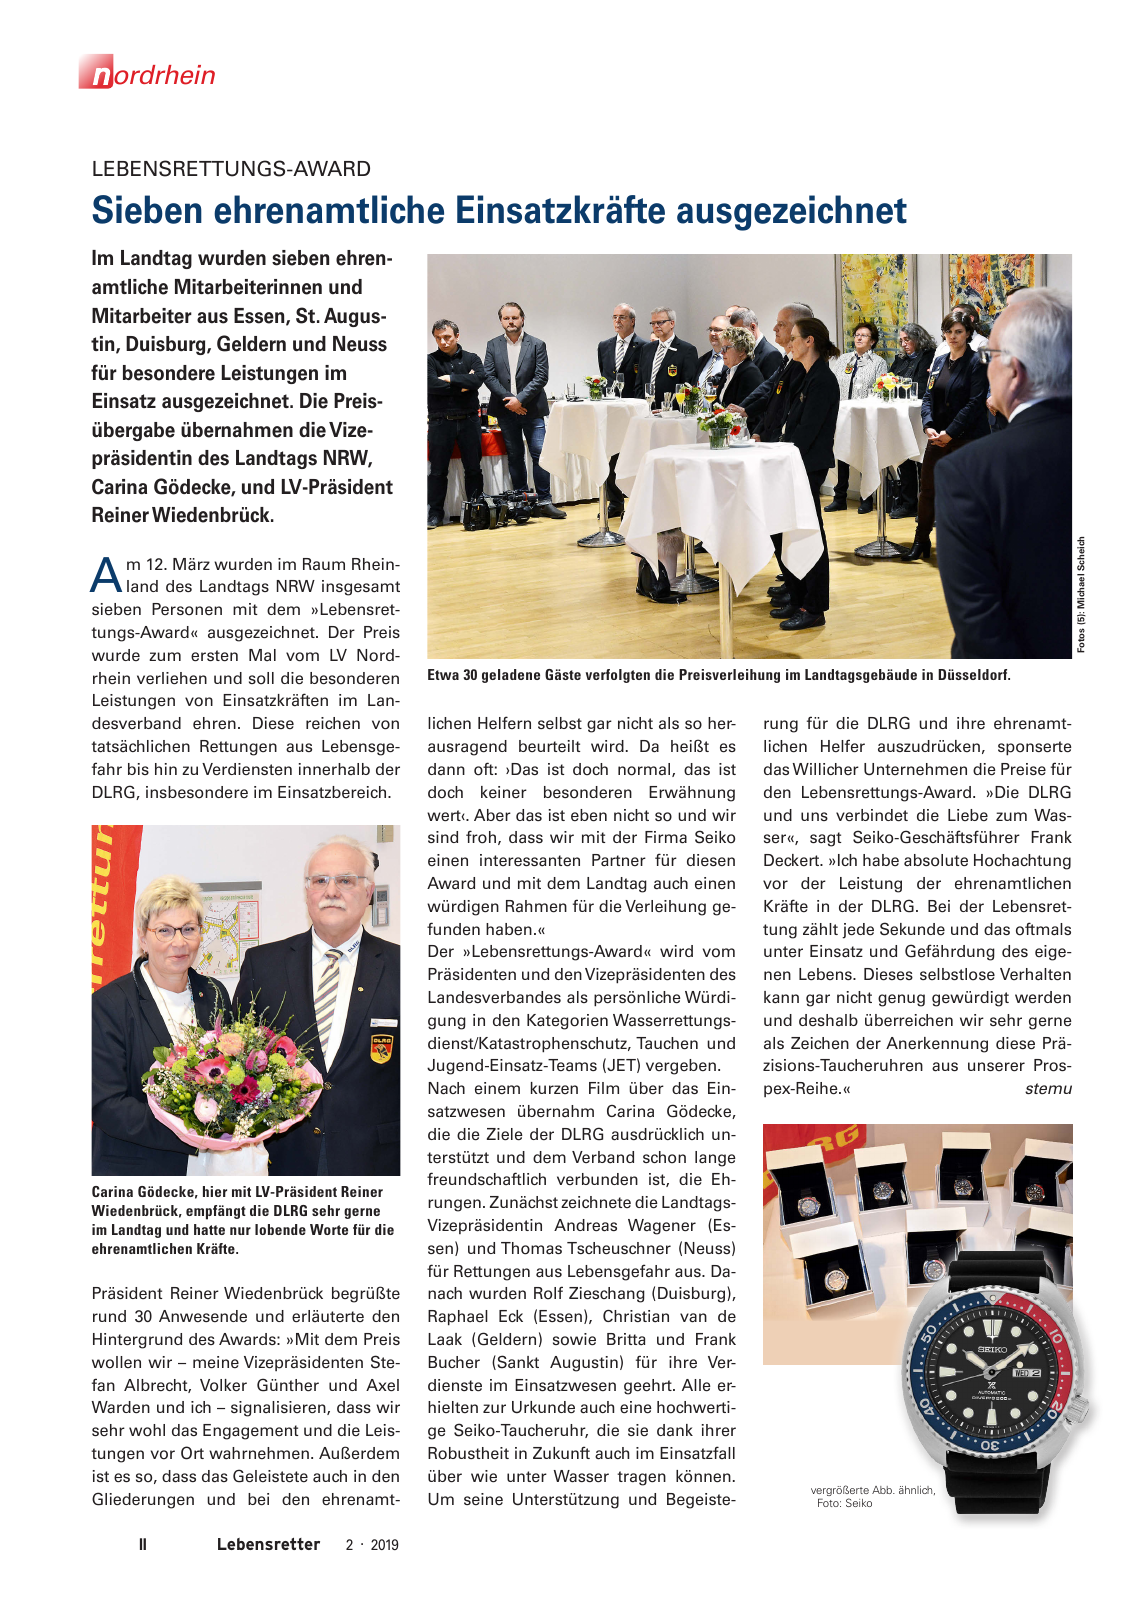 Vorschau Lebensretter 2/2019 - Nordrhein Regionalausgabe Seite 4